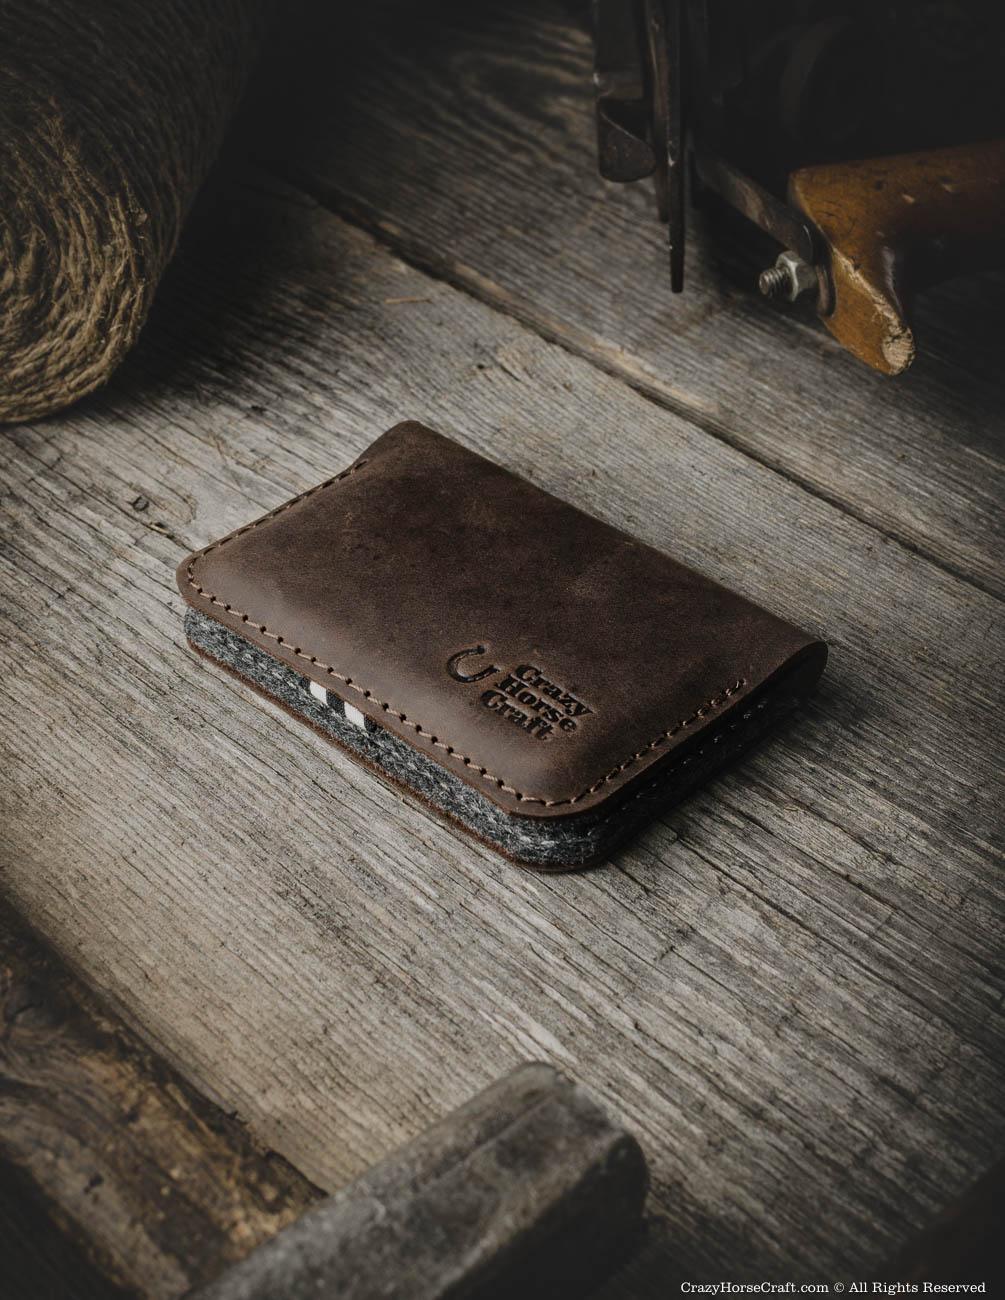 http://crazyhorsecraft.com/cdn/shop/products/Leather-vintage-style-card-holder-business-card-holder-wallet-brown-3.jpg?v=1529994908&width=2048